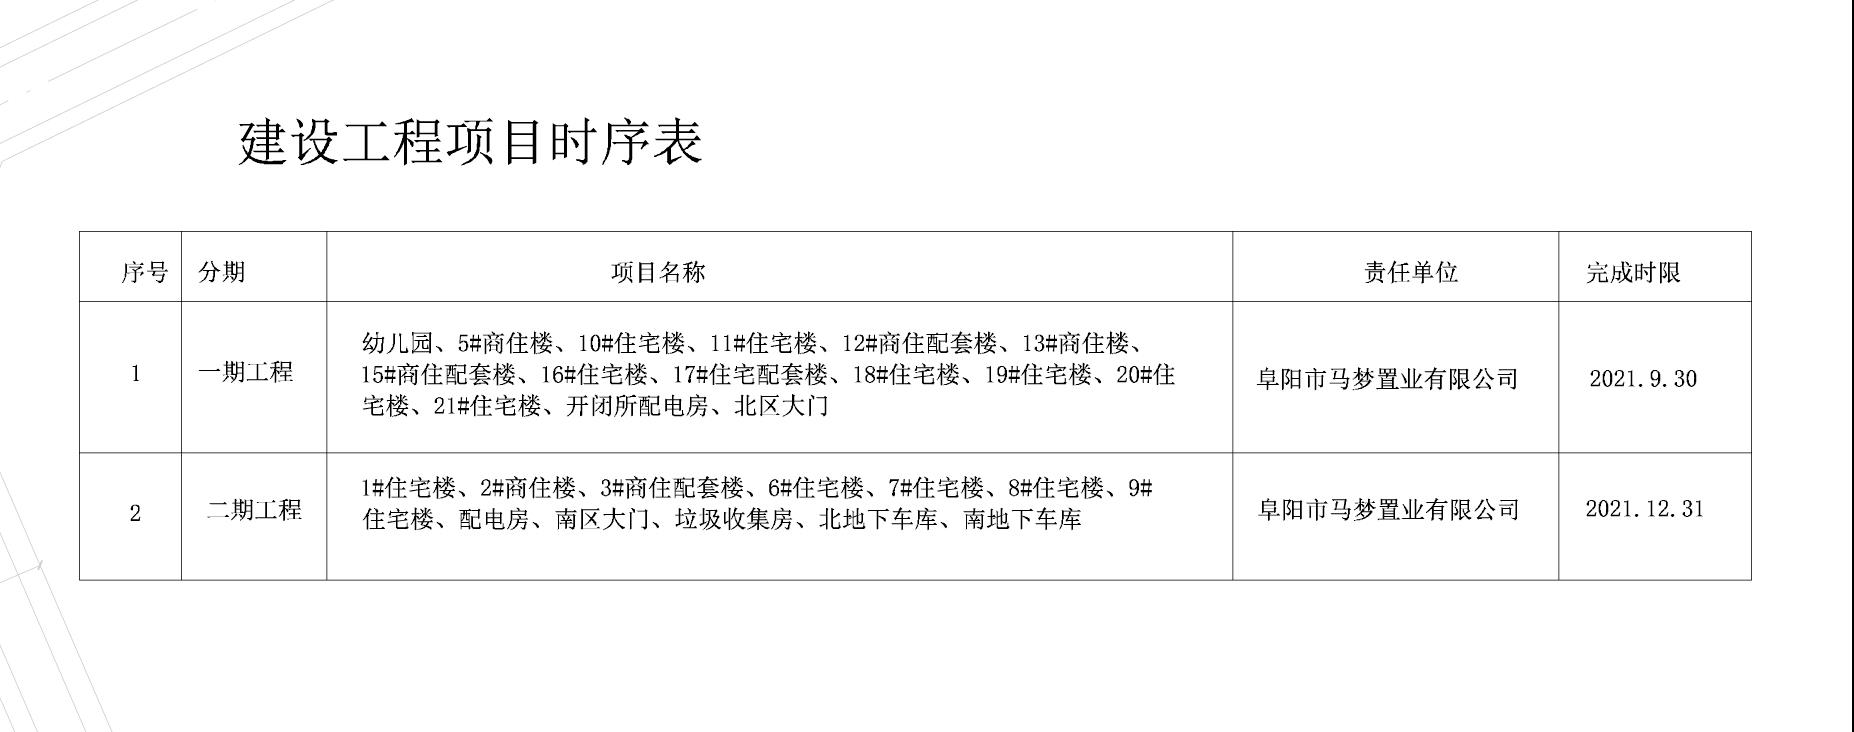 阜阳市马梦置业有限公司“金马爱梦天宸”项目调整分期规划核实的公示